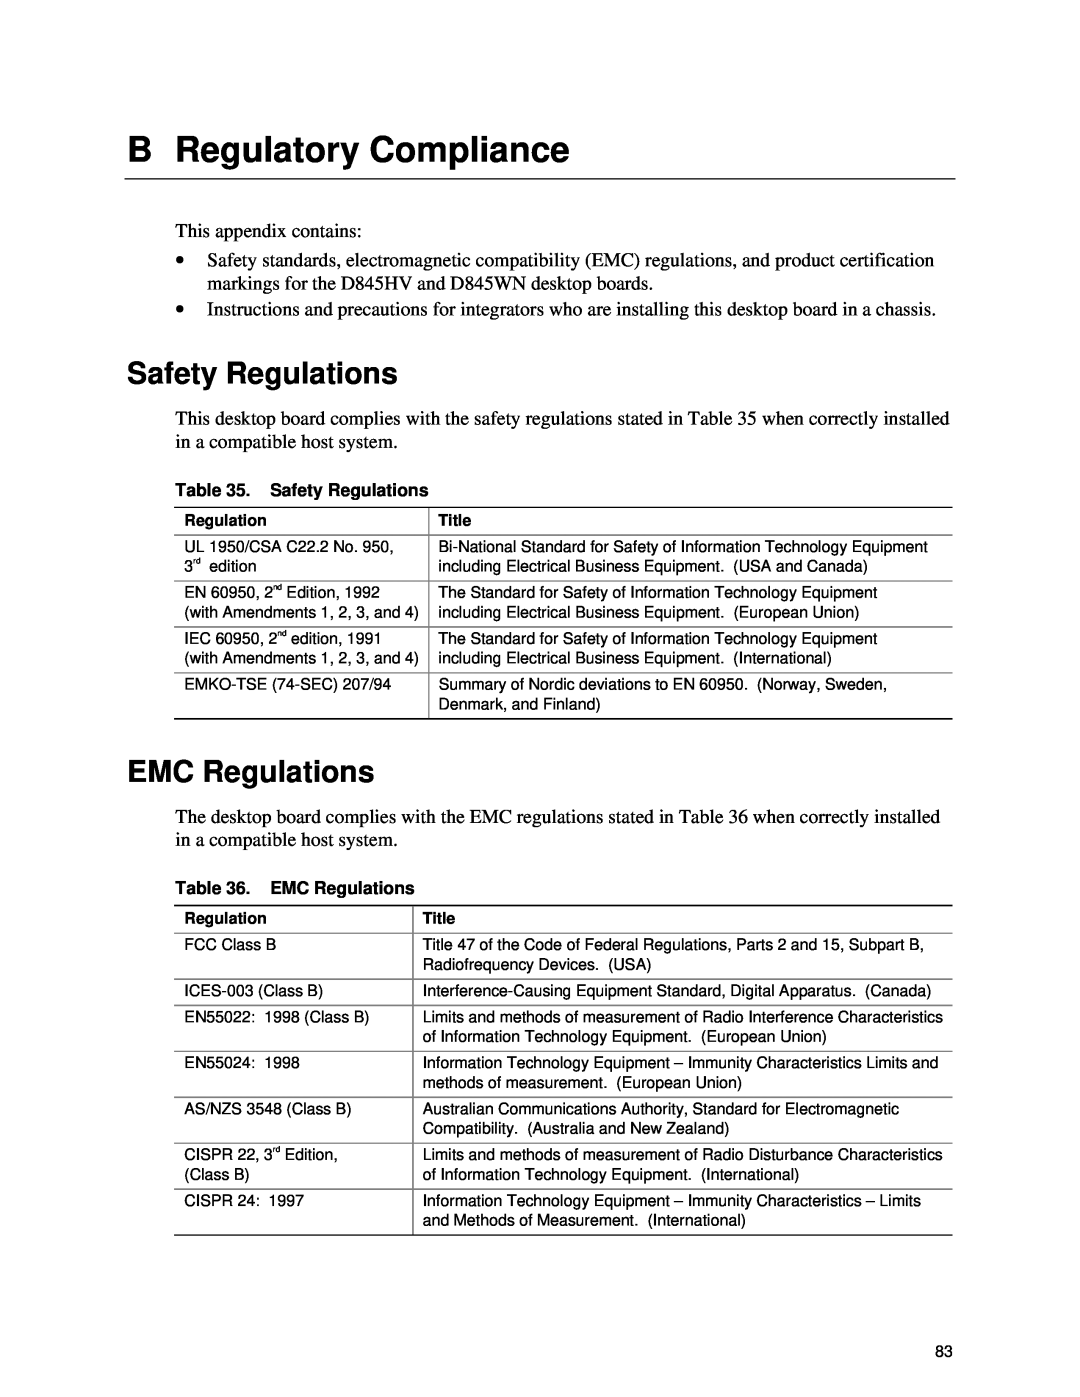 Intel D845HV, D845WN manual B Regulatory Compliance, Safety Regulations, EMC Regulations 